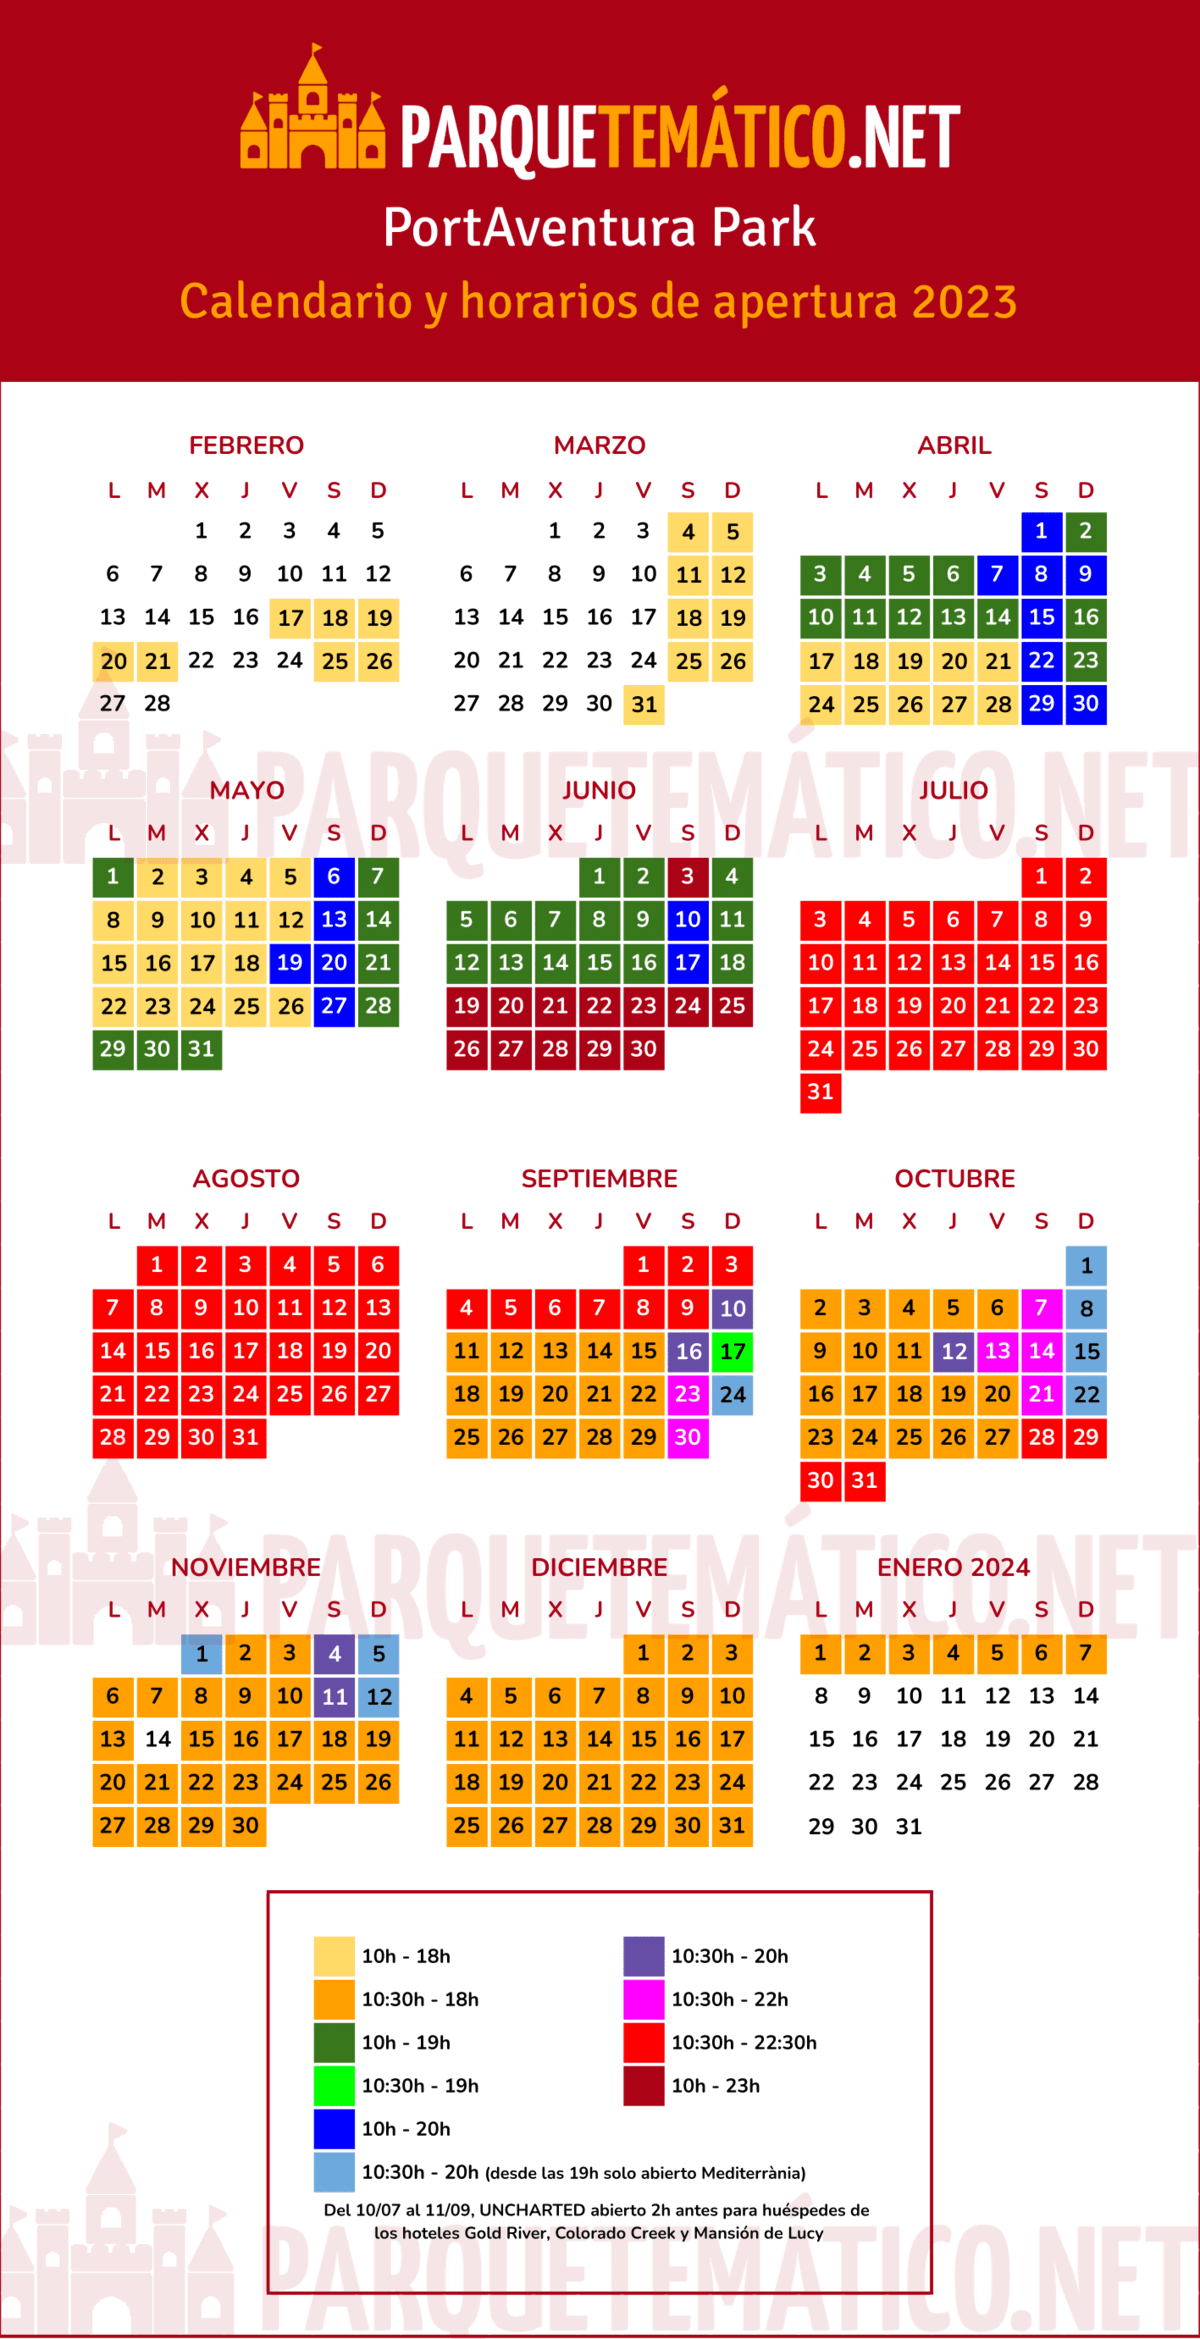 Calendario y horarios PortAventura 2023 - PortAventura Park